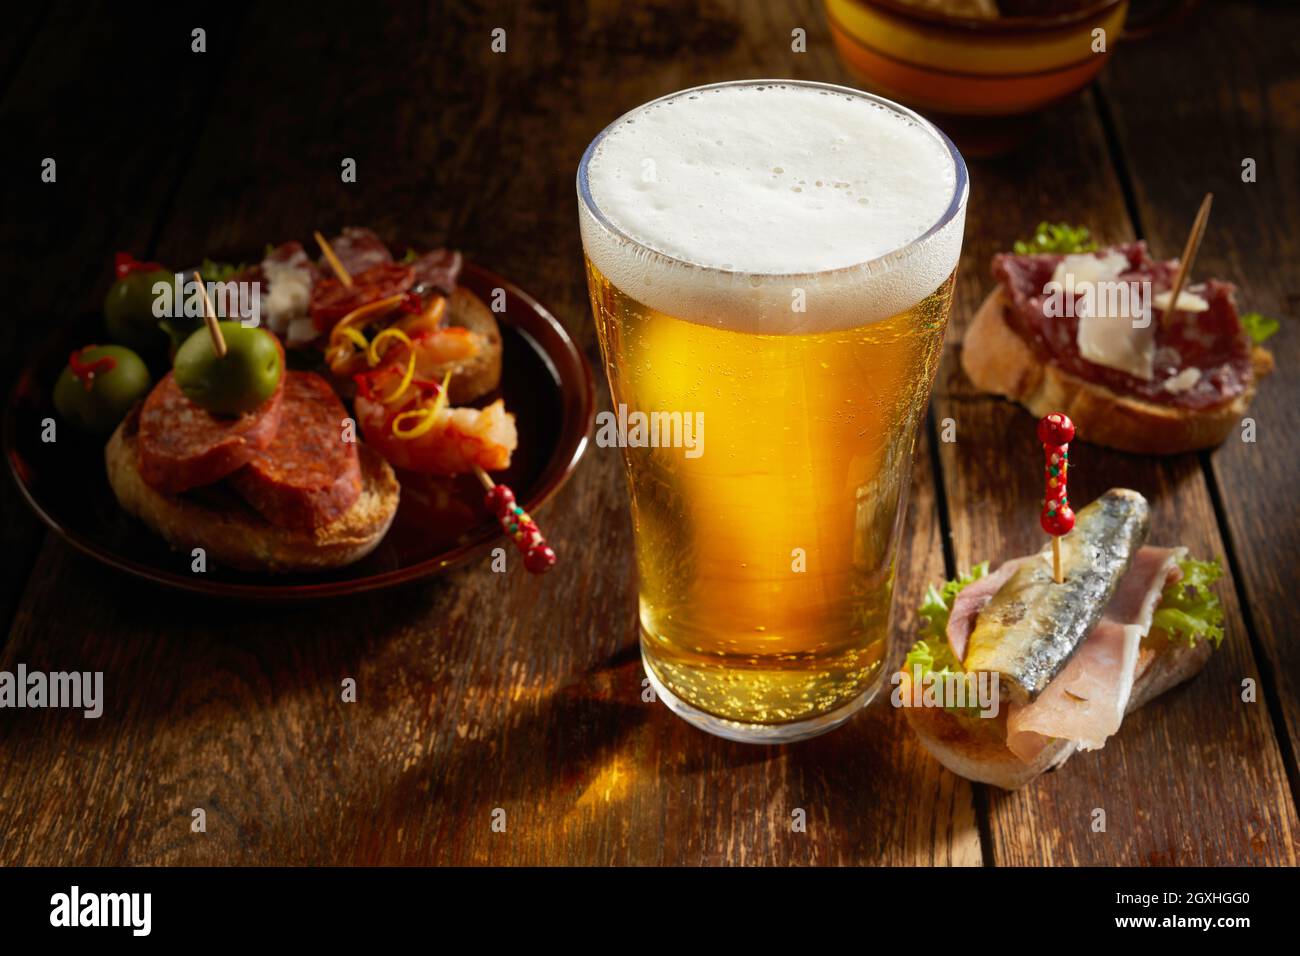 Gustosa selezione di gustose tapas spagnole servite con una pinta fredda di birra con testa frizzante su un rustico banco di legno ombreggiato in una taverna in un'alta anghl Foto Stock